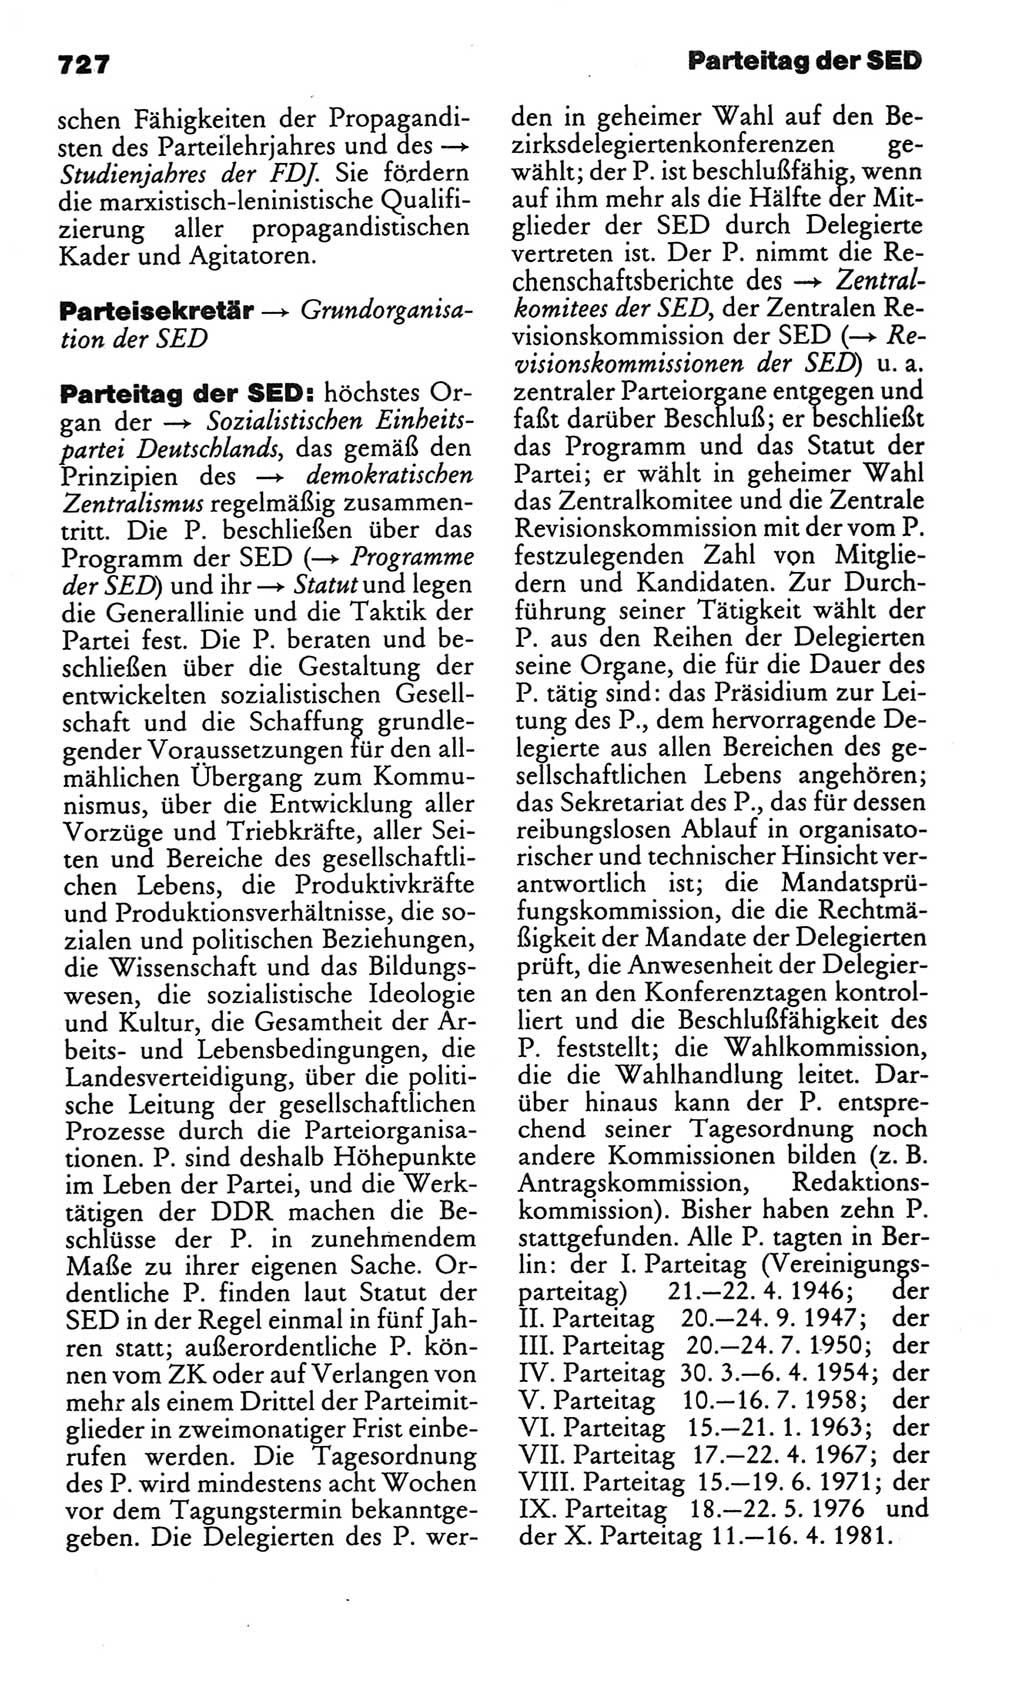 Kleines politisches Wörterbuch [Deutsche Demokratische Republik (DDR)] 1986, Seite 727 (Kl. pol. Wb. DDR 1986, S. 727)